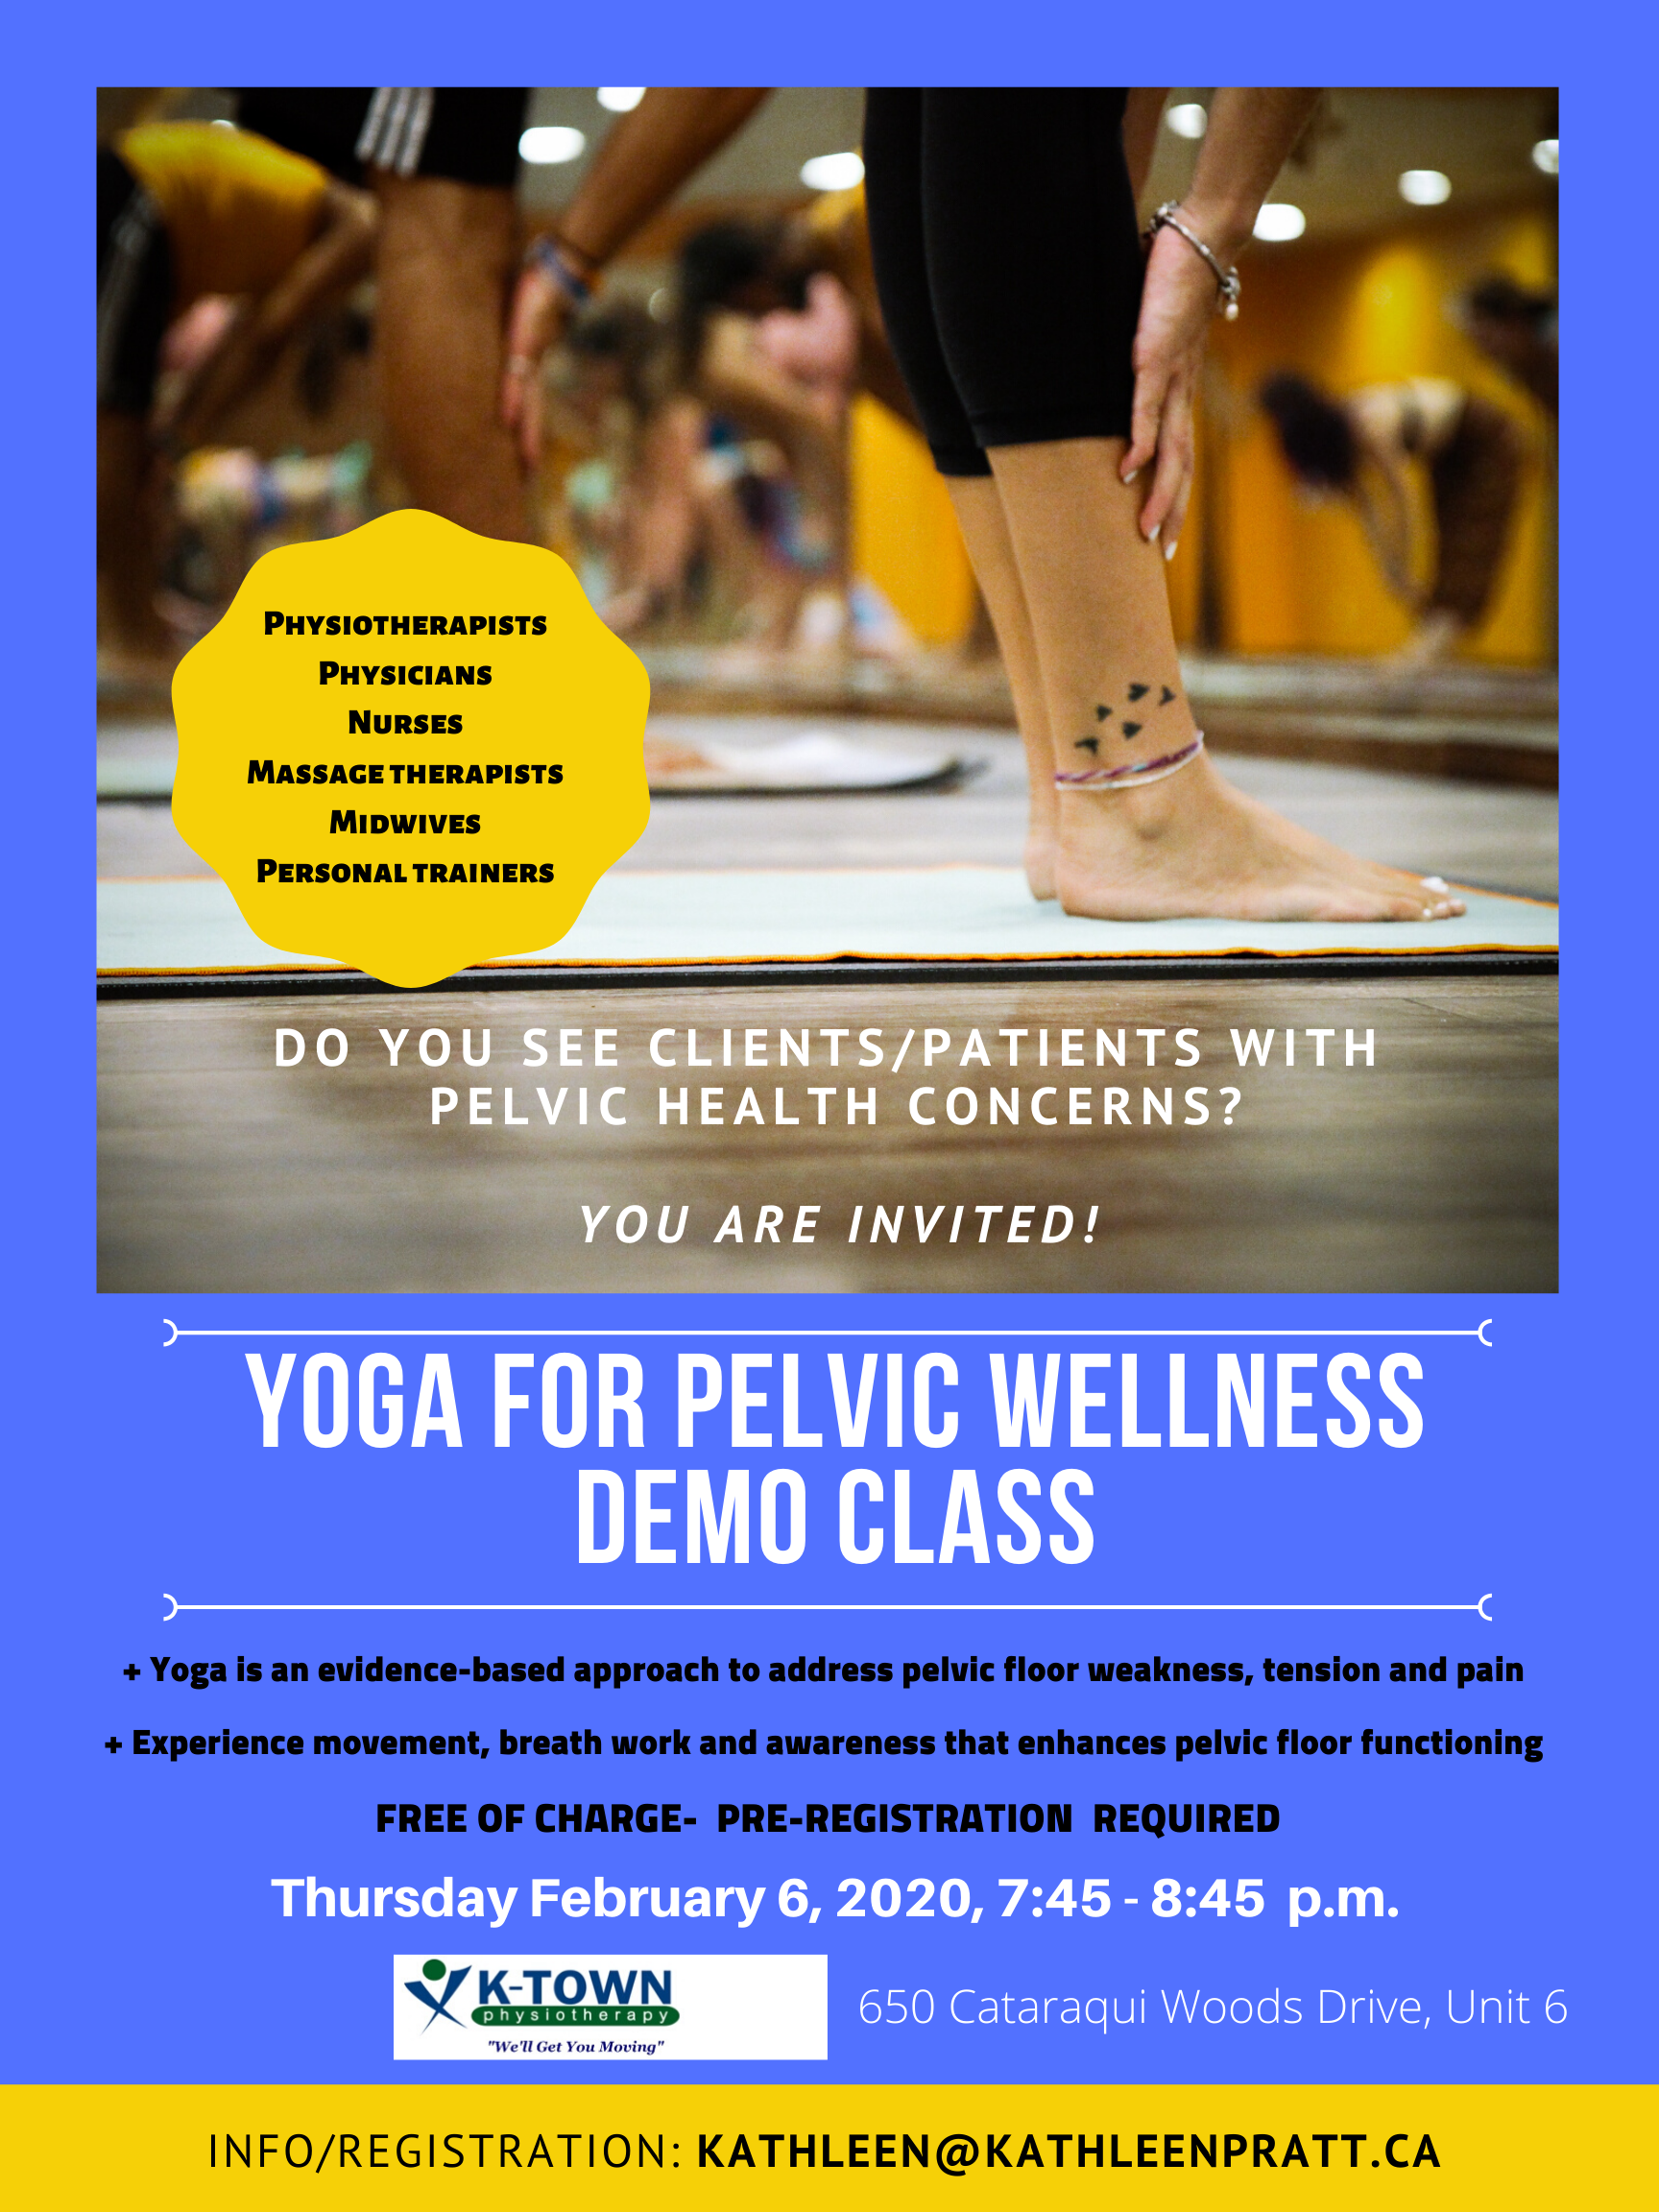 Yoga for Pelvic Wellness Demo Class for Health Care Professionals